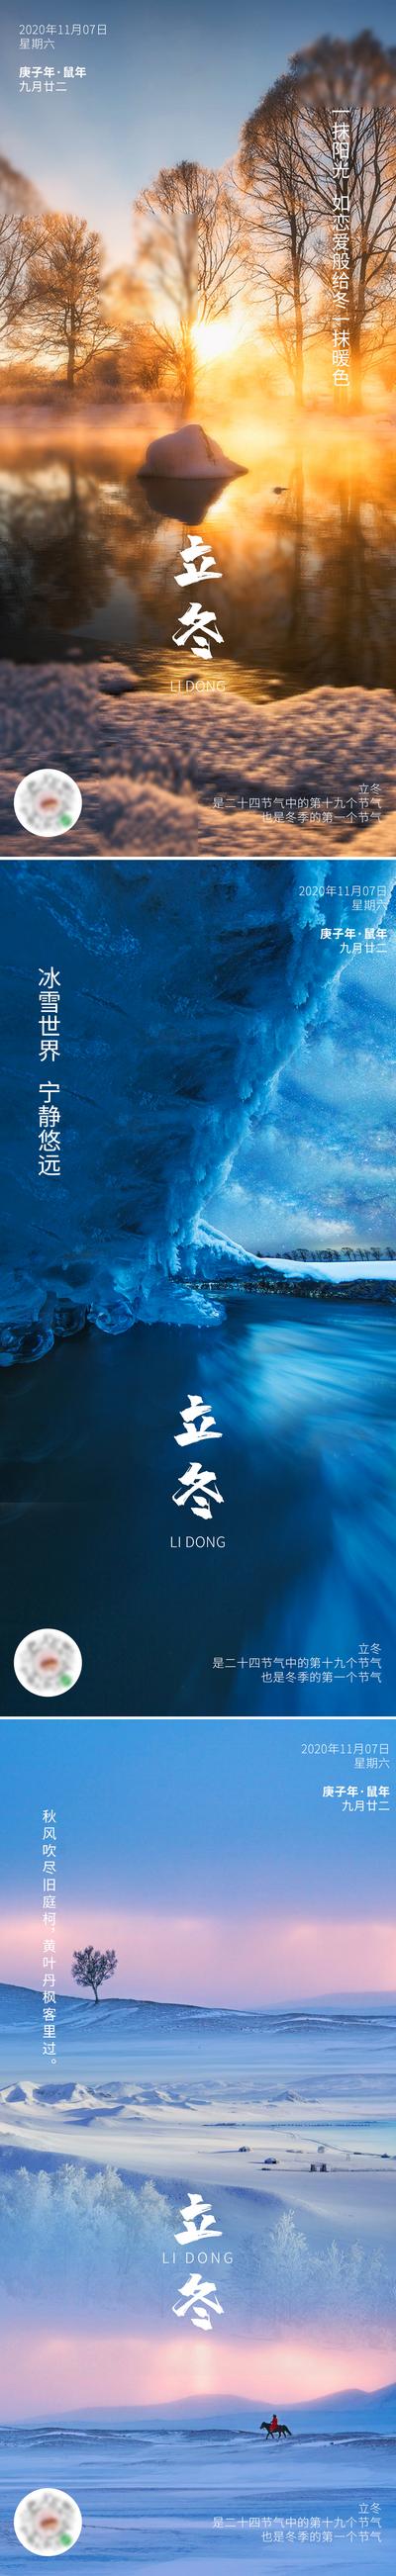 南门网 海报 立冬 二十四节气 风景 雪景